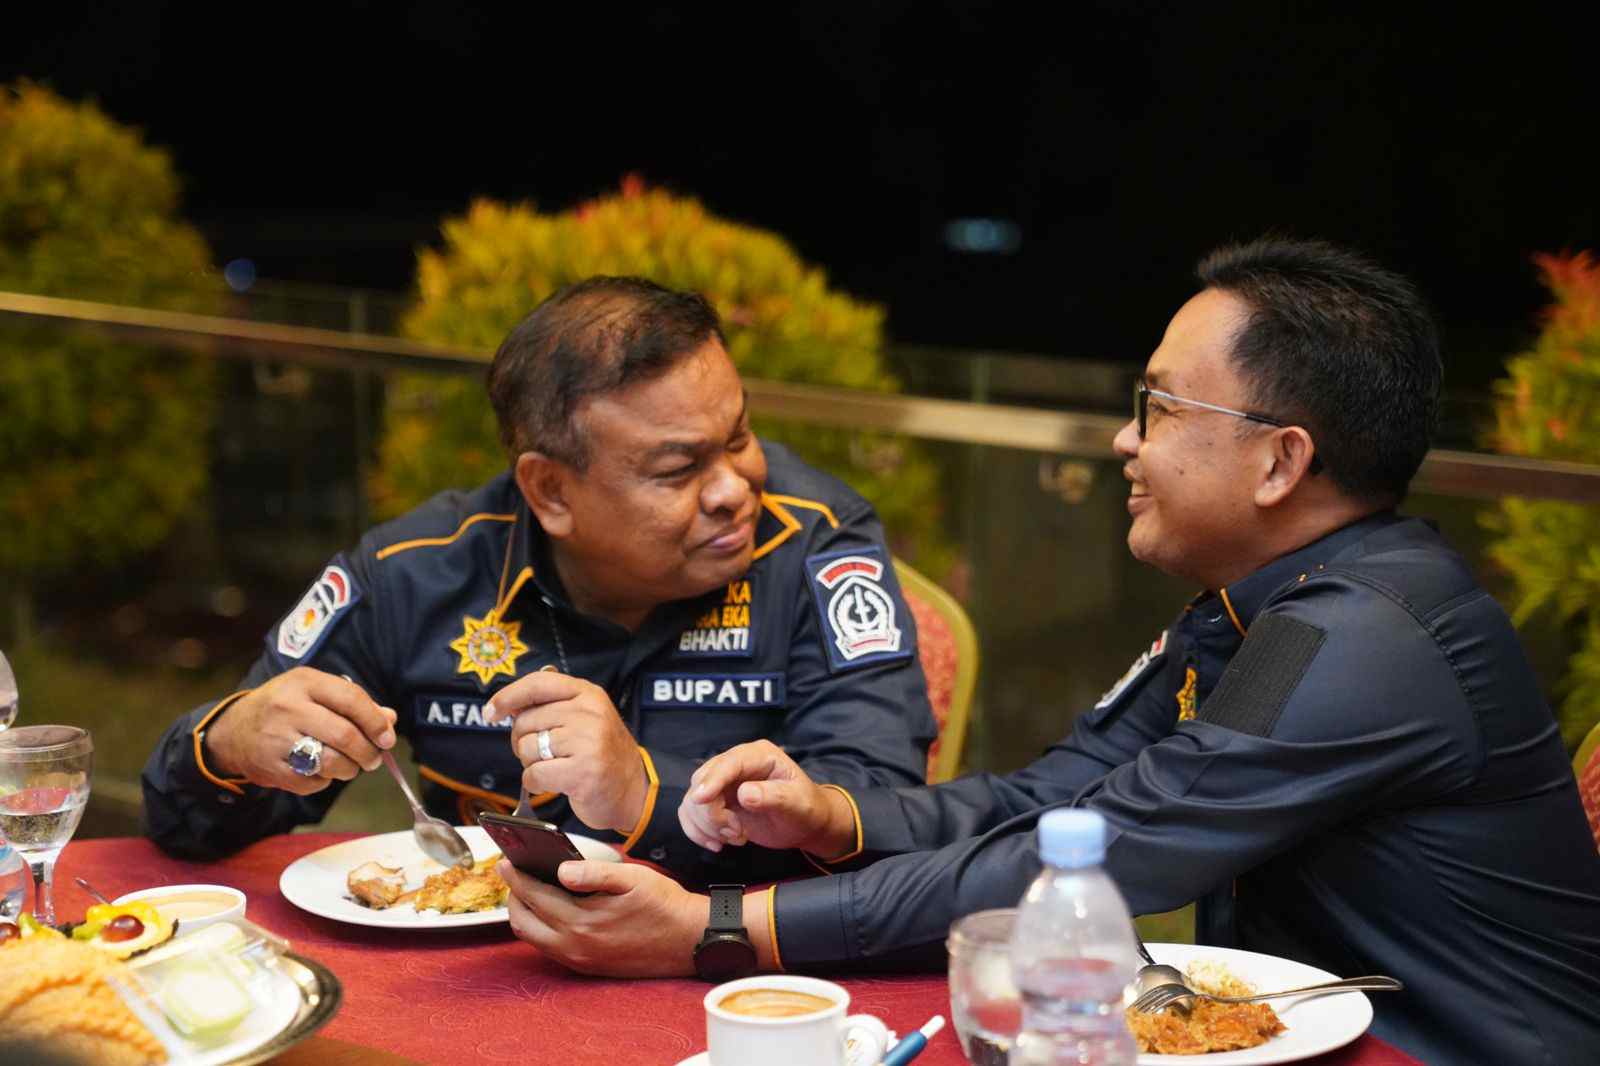 Bupati Bone, Andi Fashar Padjalangi menyebut Ilham Azikin adalah sosok pemimpin masa depan